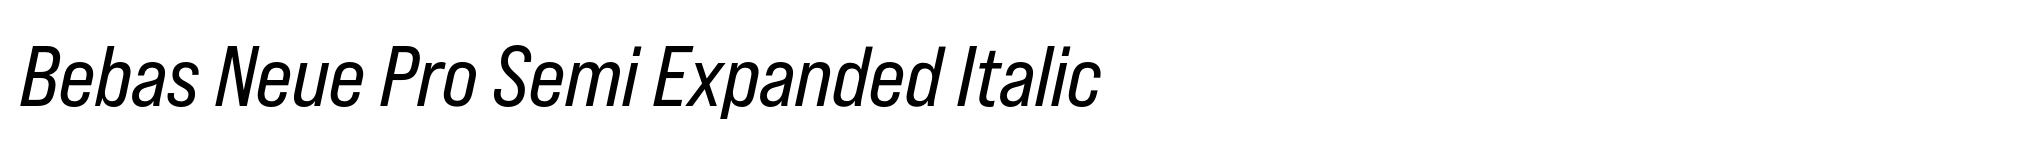 Bebas Neue Pro Semi Expanded Italic image